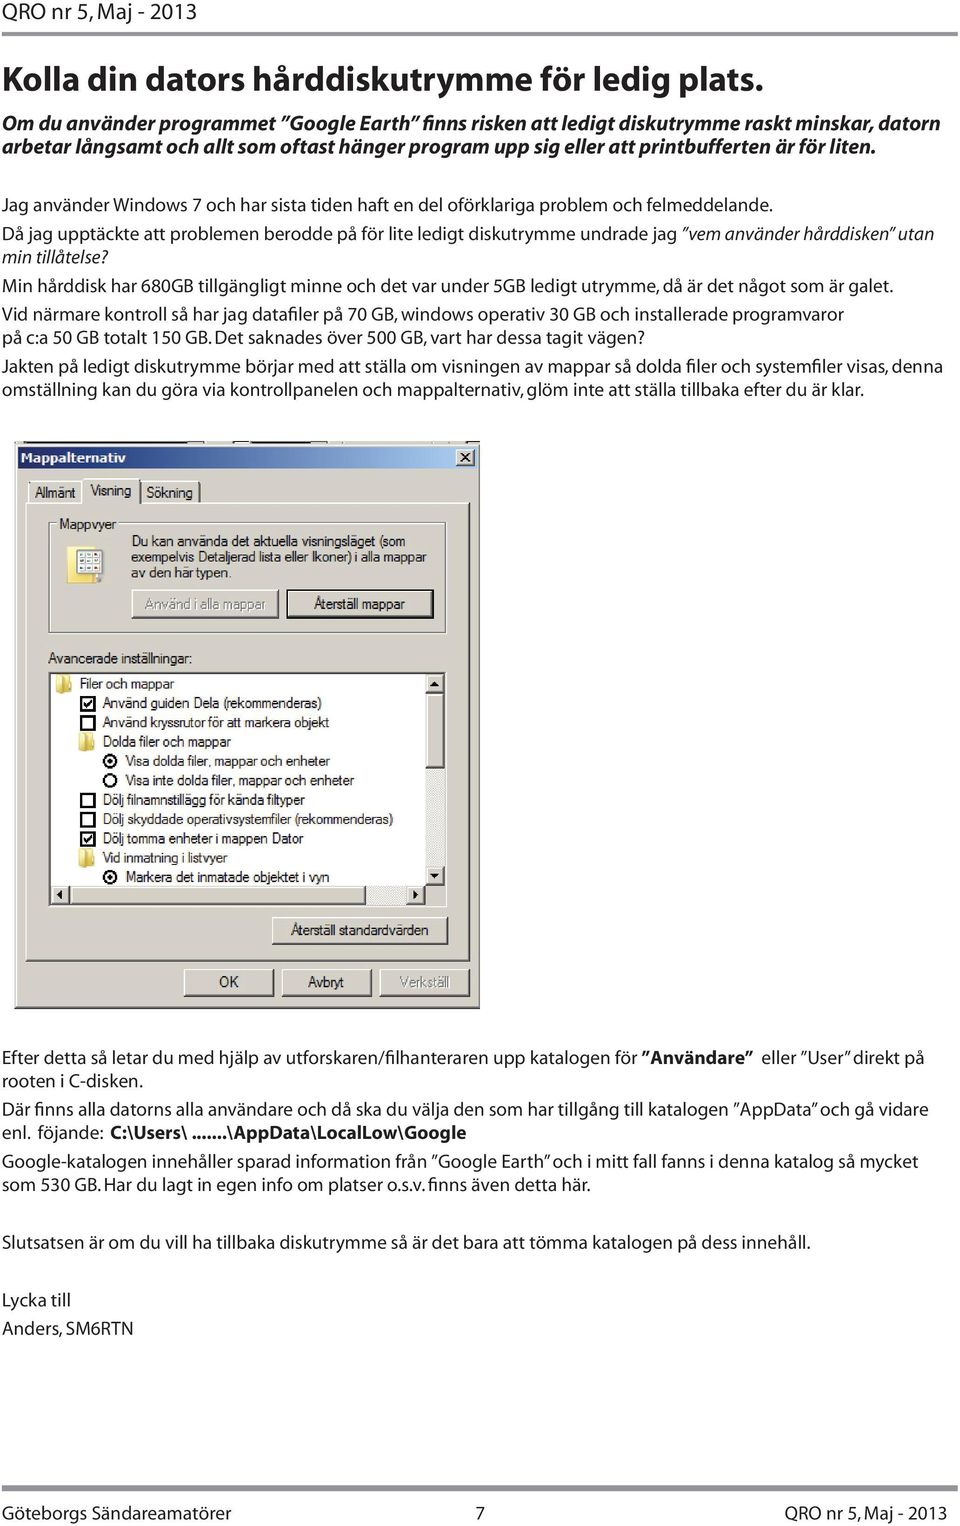 Jag använder Windows 7 och har sista tiden haft en del oförklariga problem och felmeddelande.